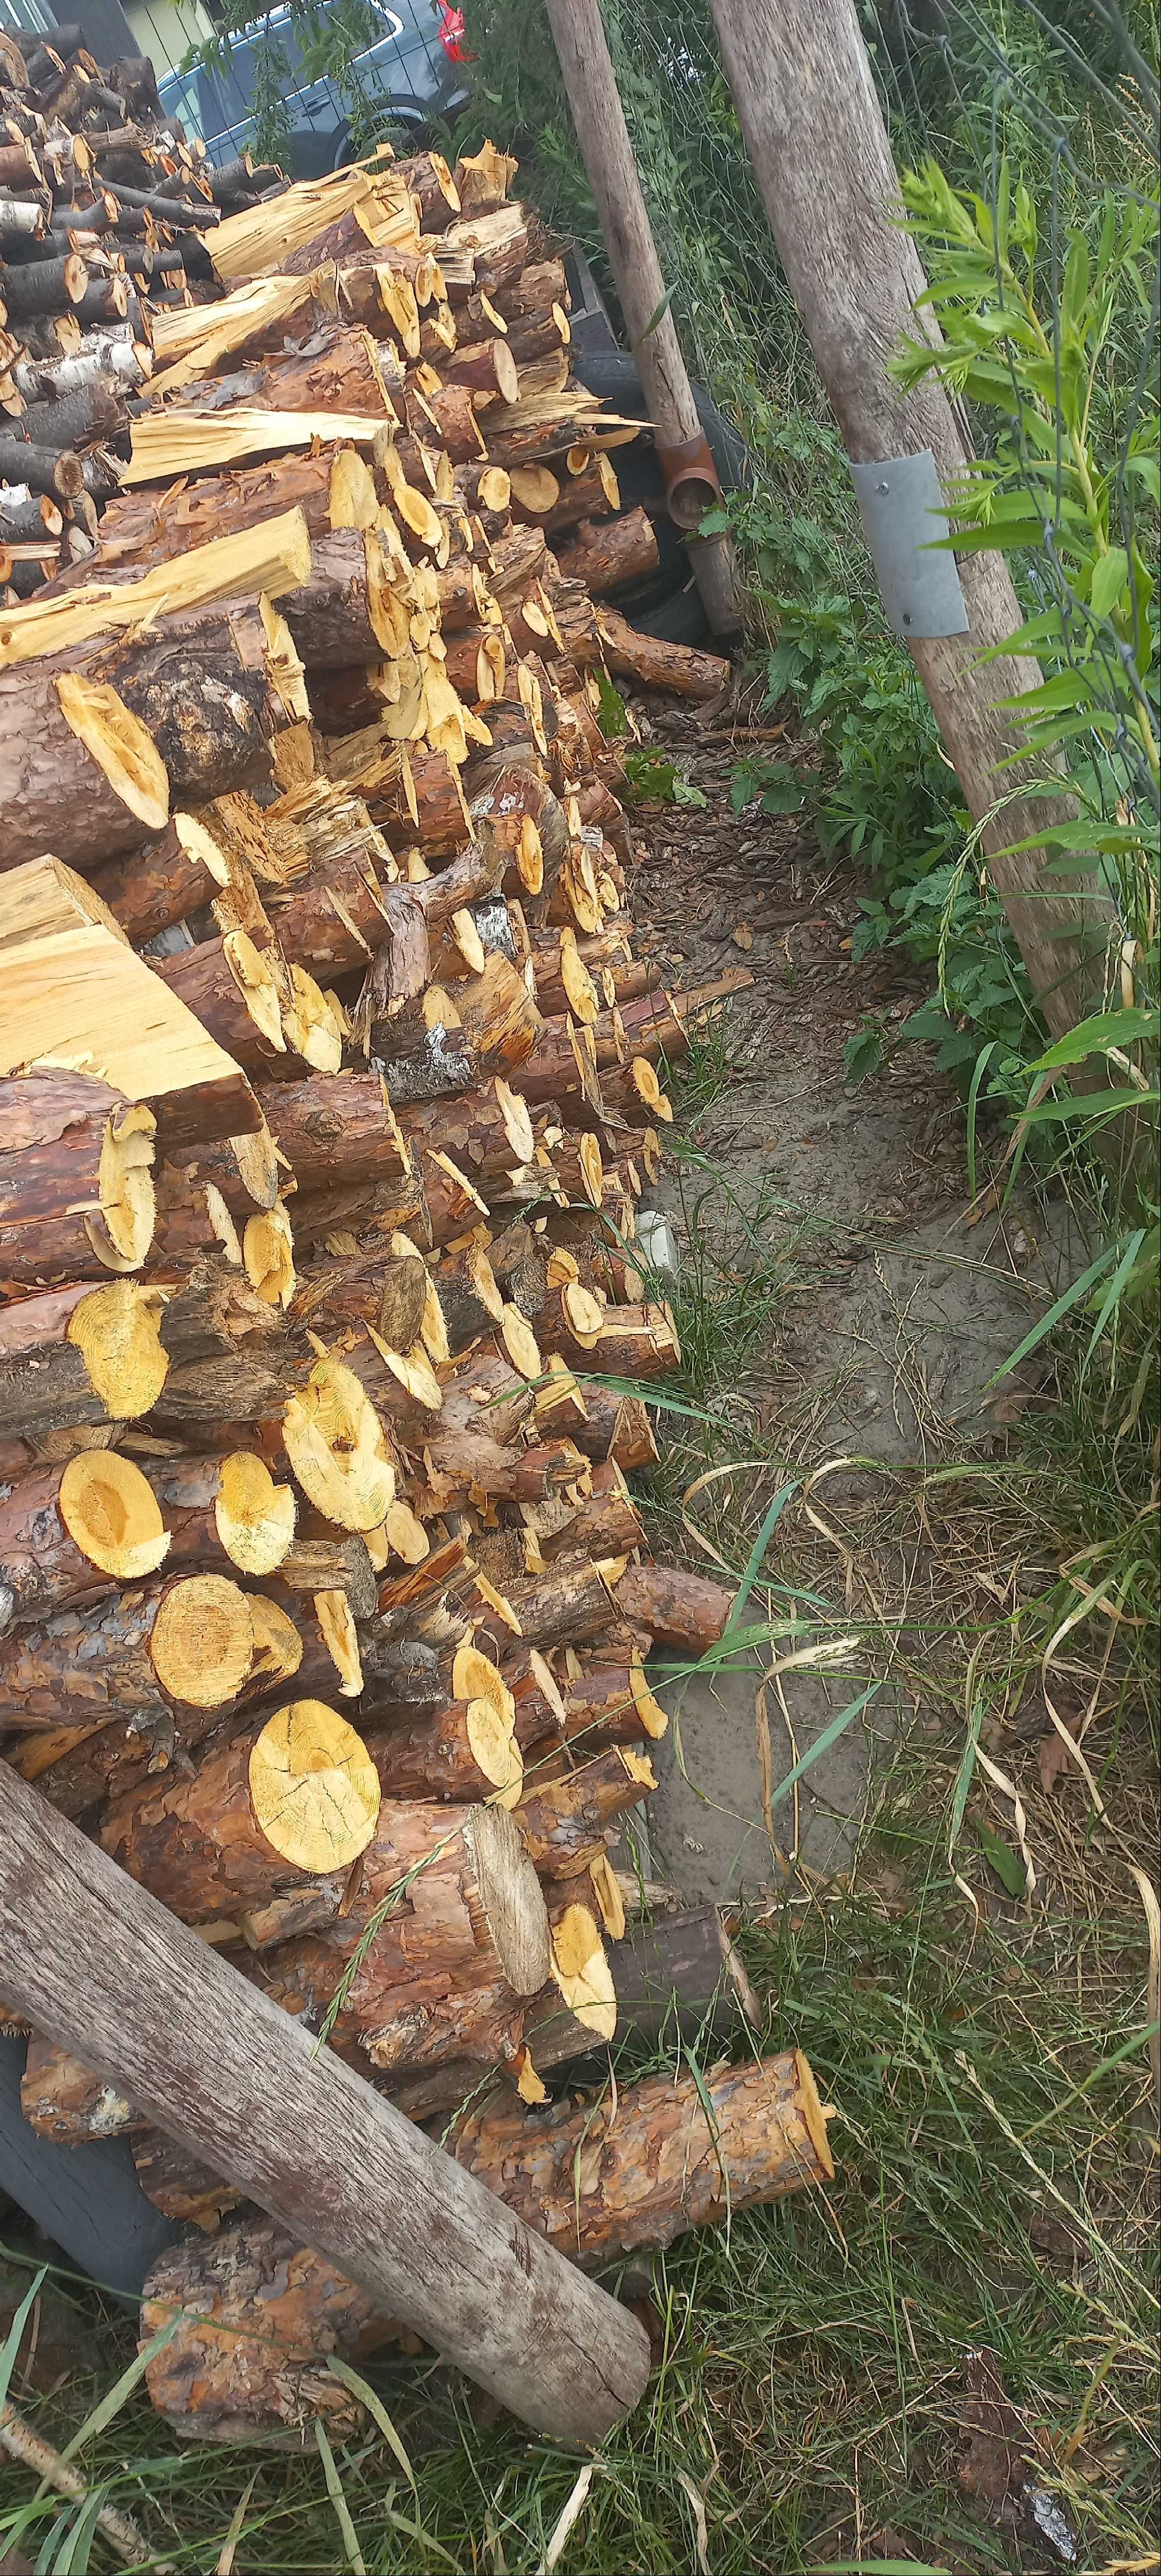 SUCHE drewno opałowe sosna sucha z marca 2022 pocięta prawie 1,2 m3